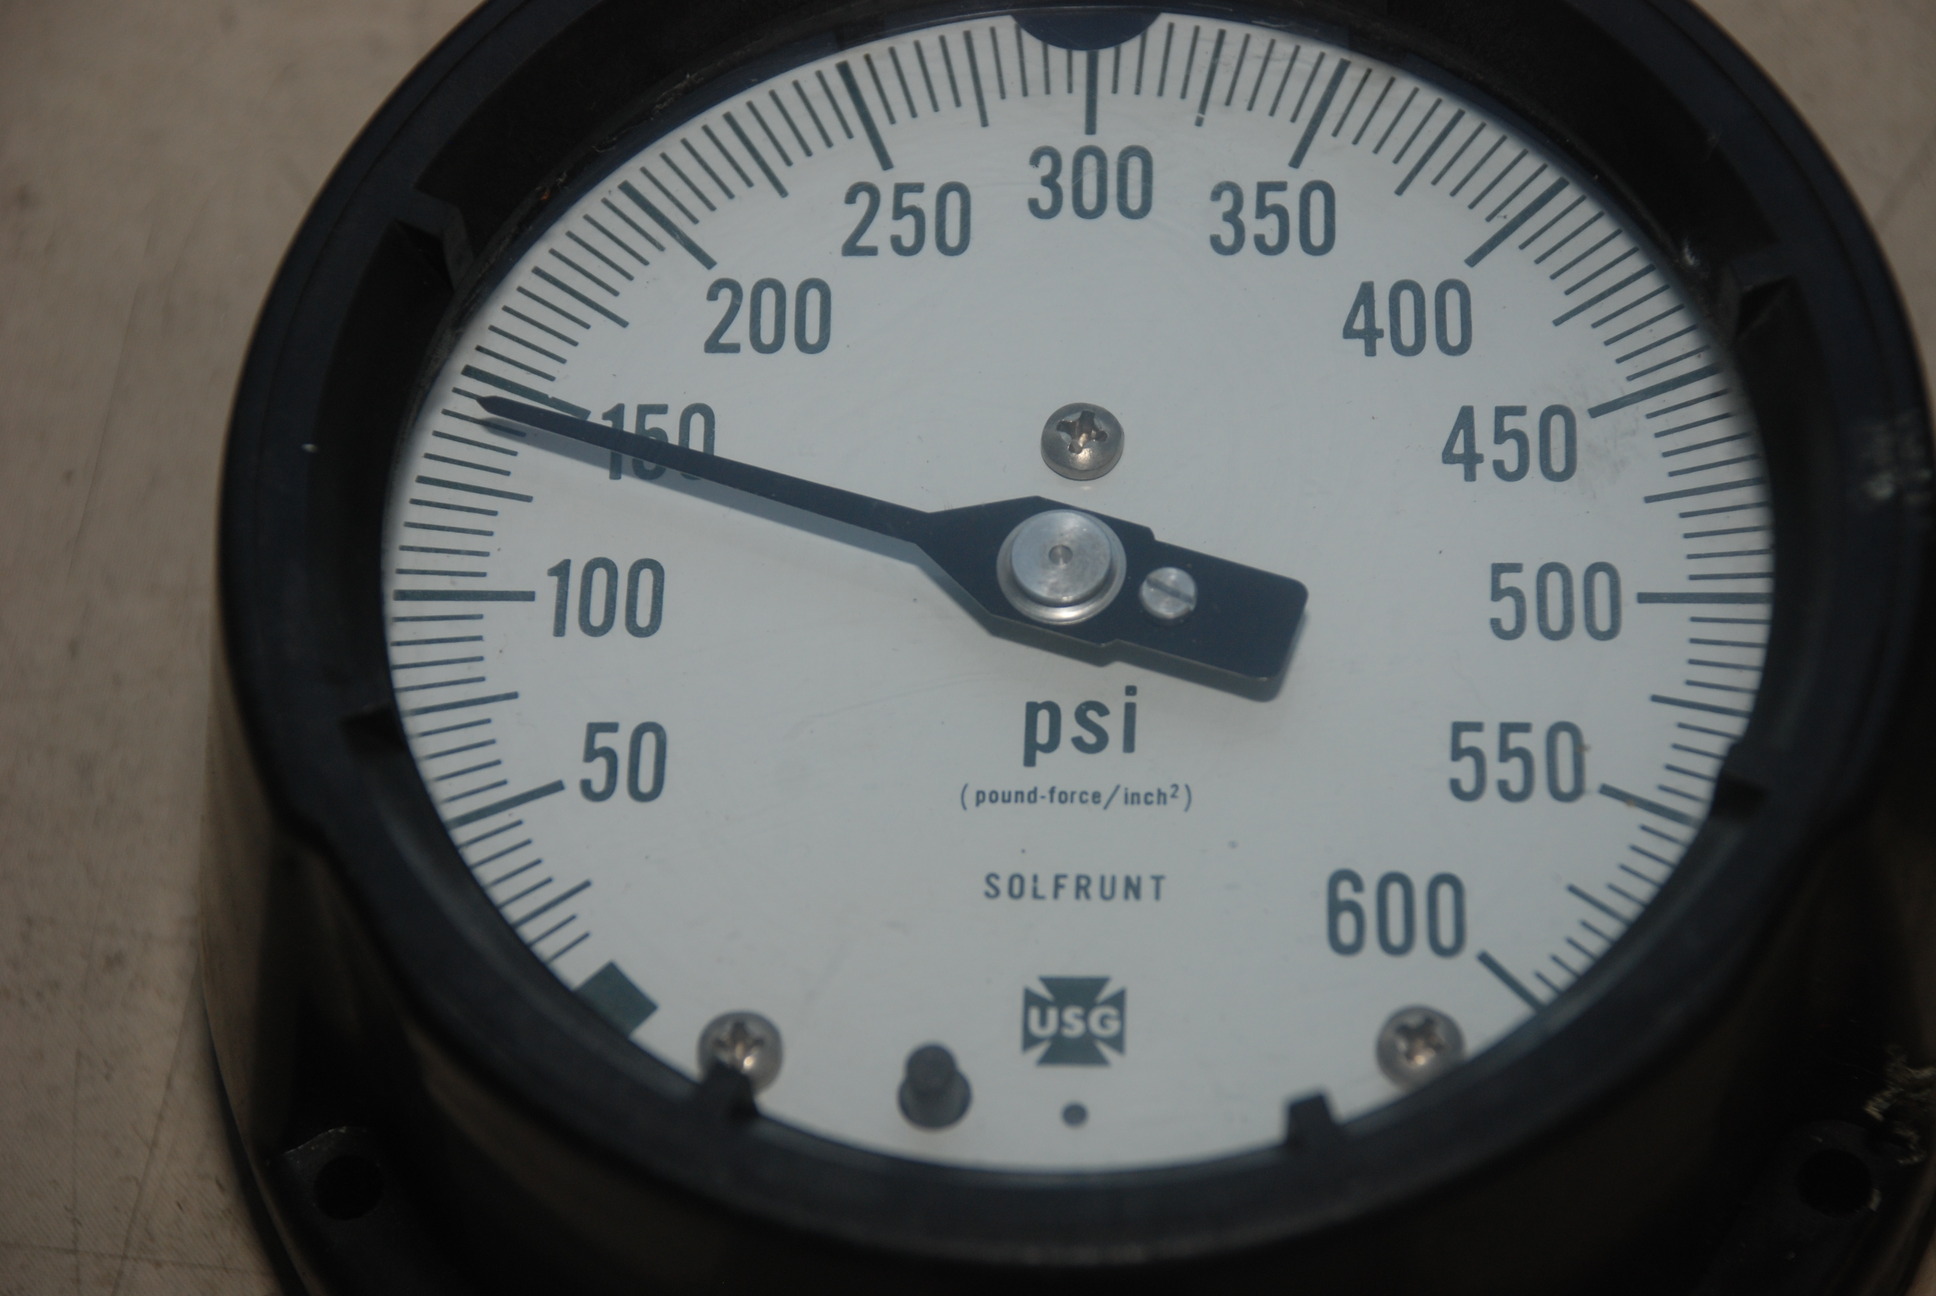 USG Solfrunt 600 Psi Pressure Gauge Made in USA INV=6435 | eBay1936 x 1296